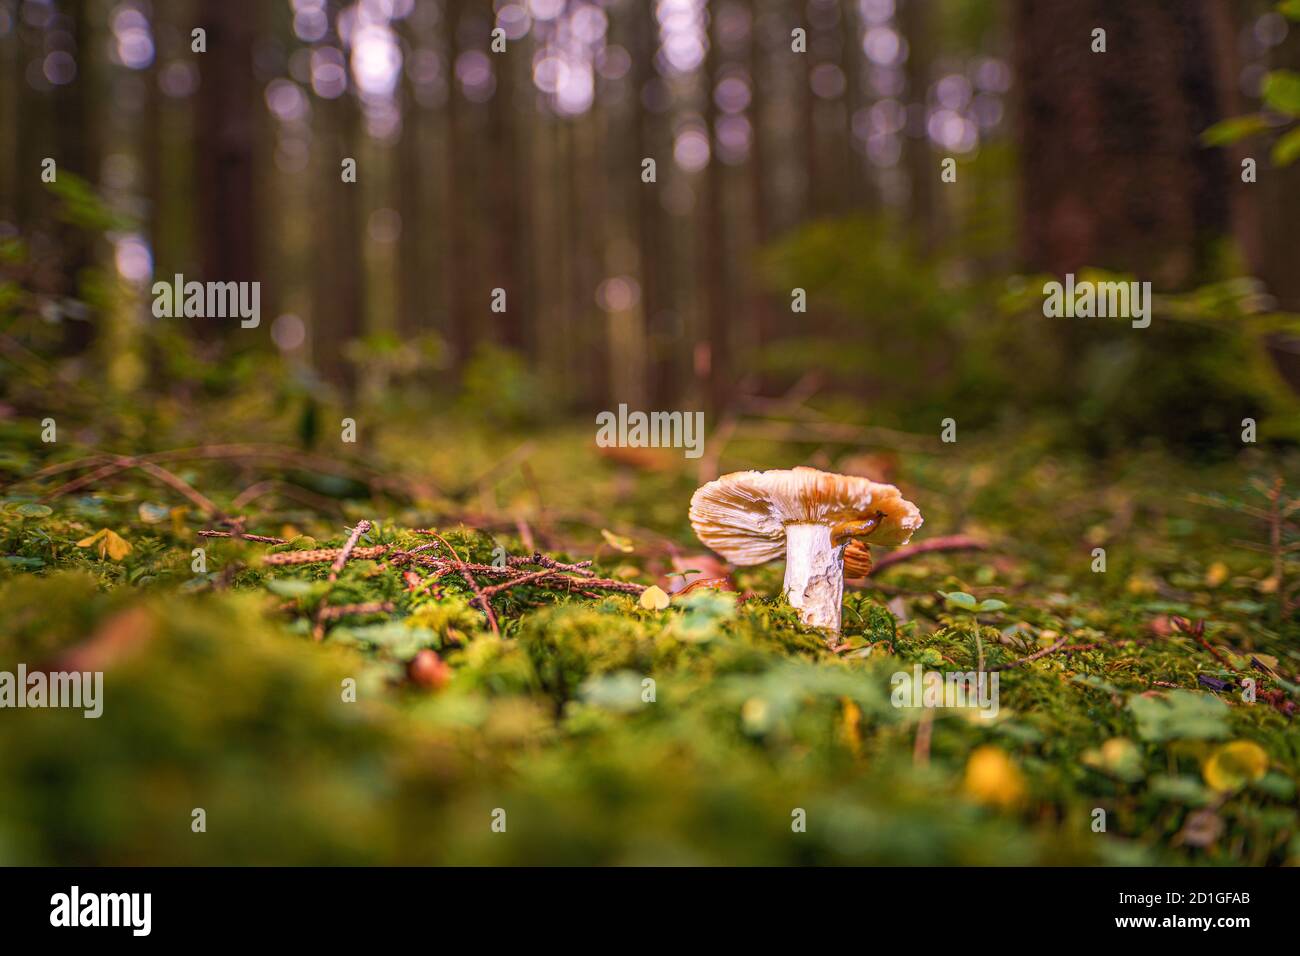 Funghi su una radura in una foresta di funghi autunno nei raggi del sole. Immagine macro di un fungo nella foresta con spazio di copia Foto Stock